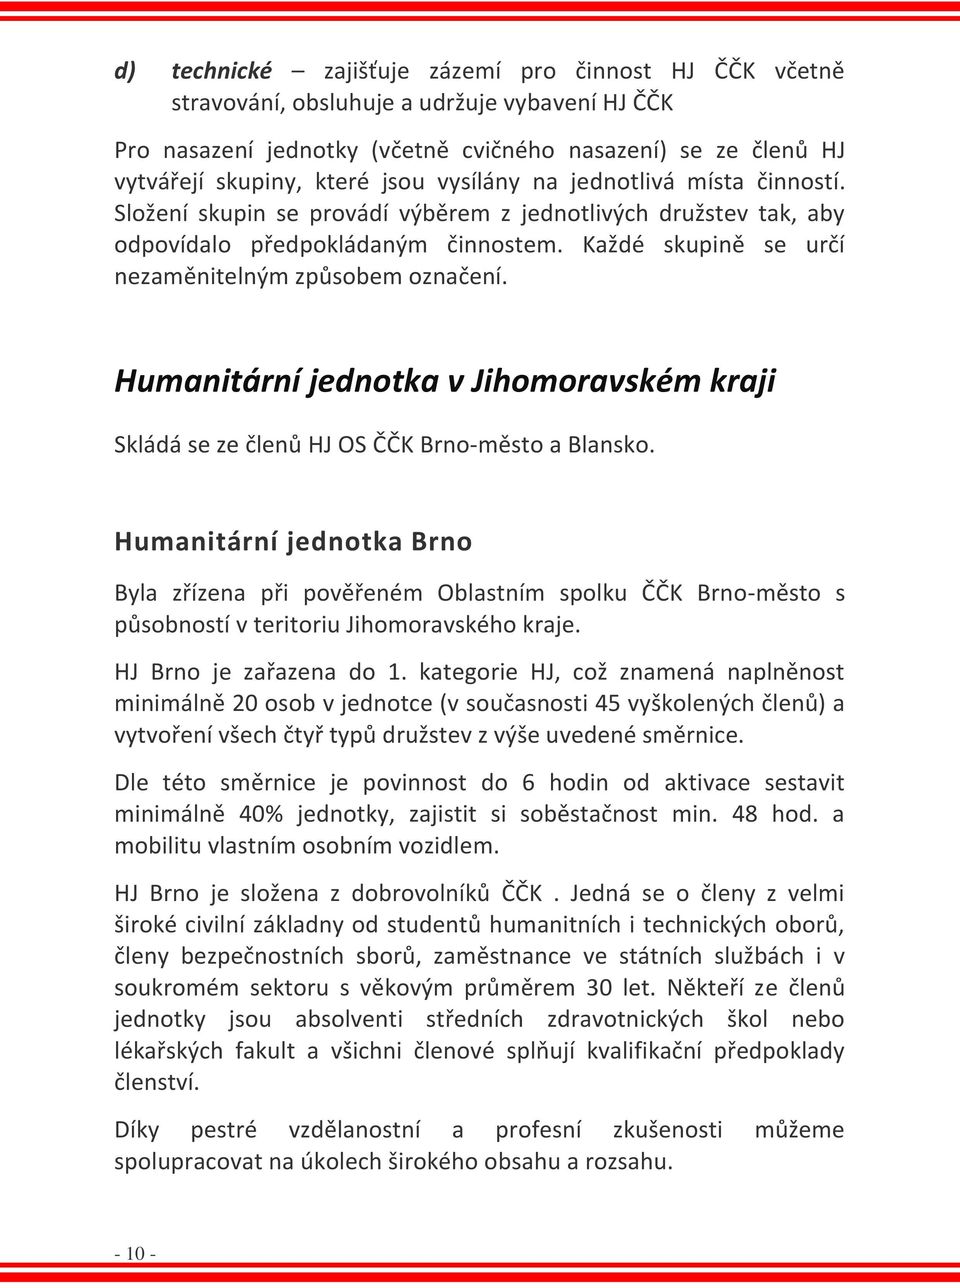 Humanitární jednotka v Jihomoravském kraji Skládá se ze členů HJ OS ČČK Brno-město a Blansko.